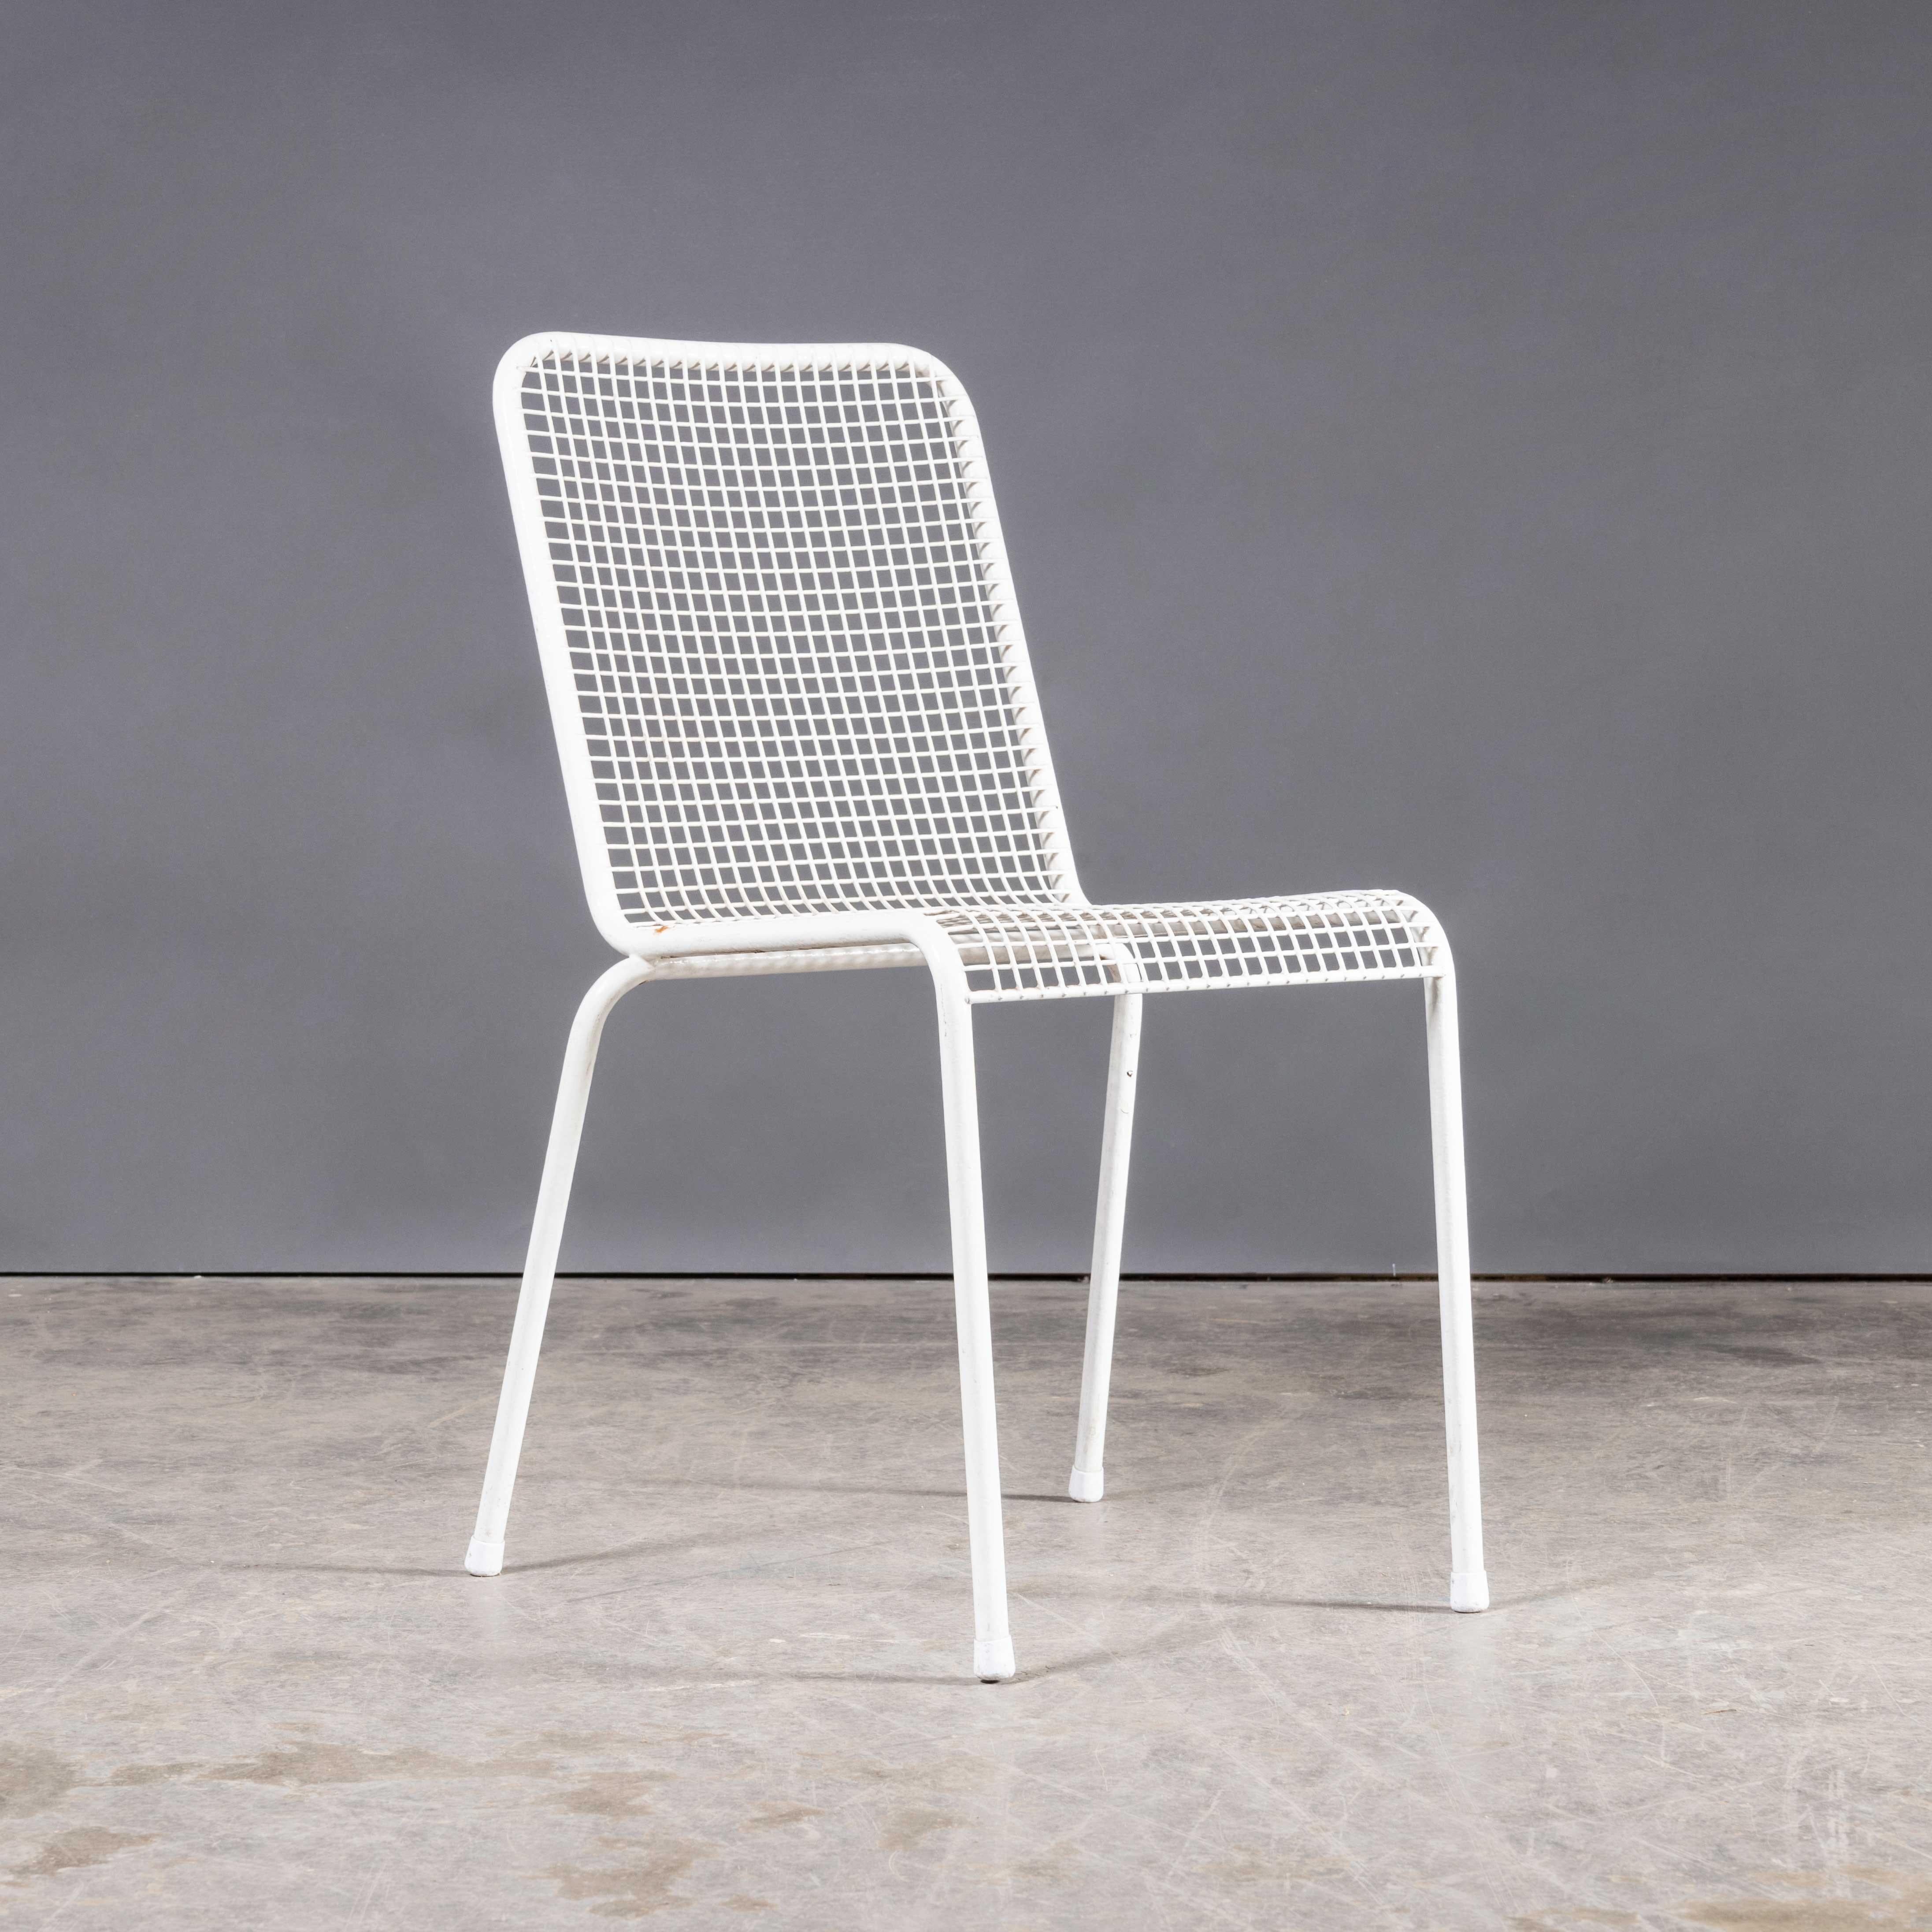 1970's Französisch Original Drahtgeflecht Weiß Outdoor-Esszimmer Stühle - Set von sechs
1970's French Original Wire Mesh White Outdoor Dining Chairs - Set Of Six. Einfache, stilvolle Stühle aus Frankreich. Die Rahmen bestehen aus Stahl, der mit